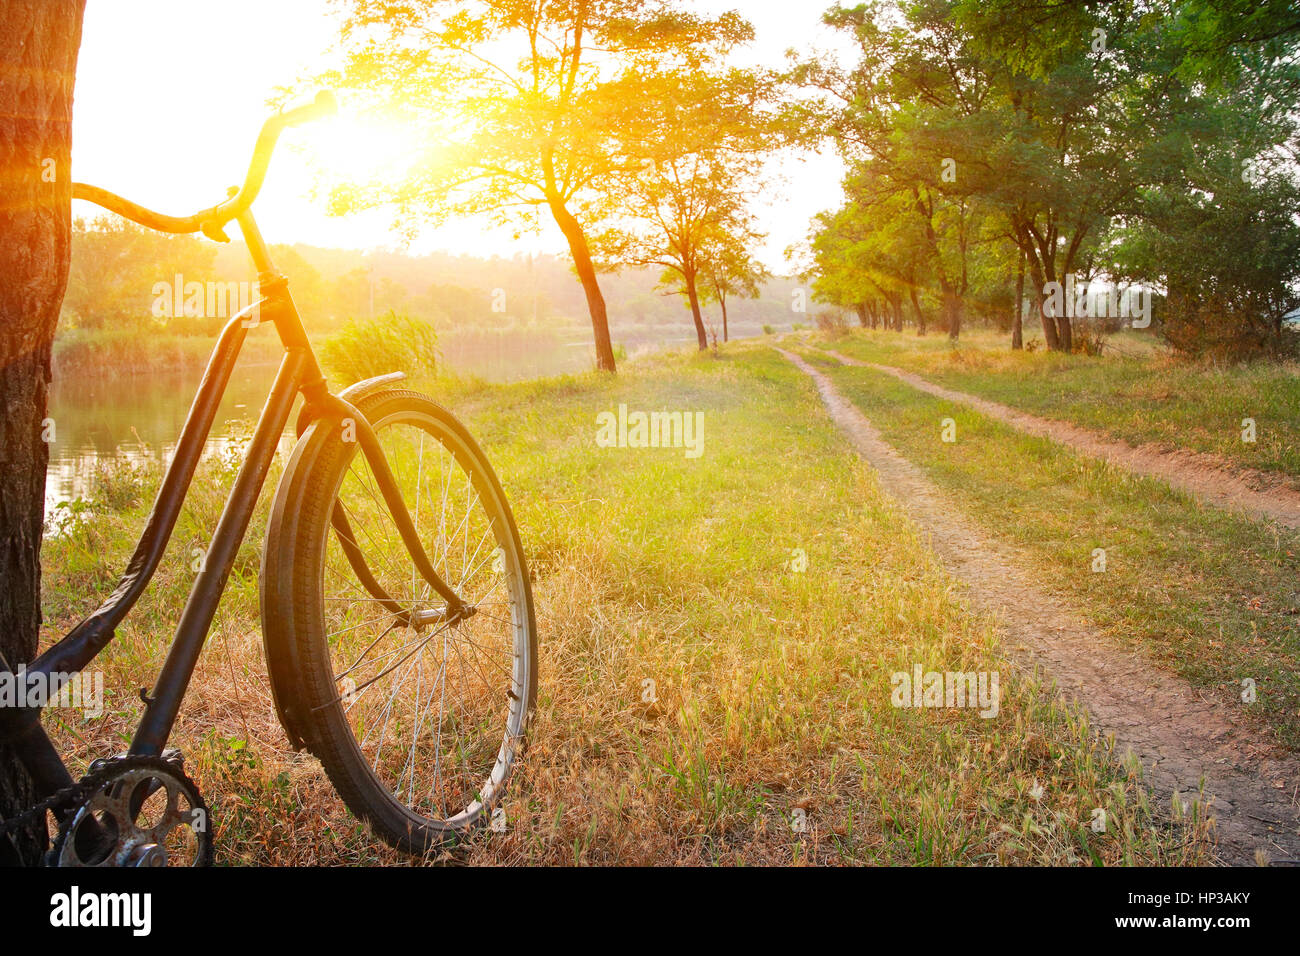 Paesaggio estivo, in bicicletta nei pressi di un albero sulla riva del fiume al tramonto Foto Stock